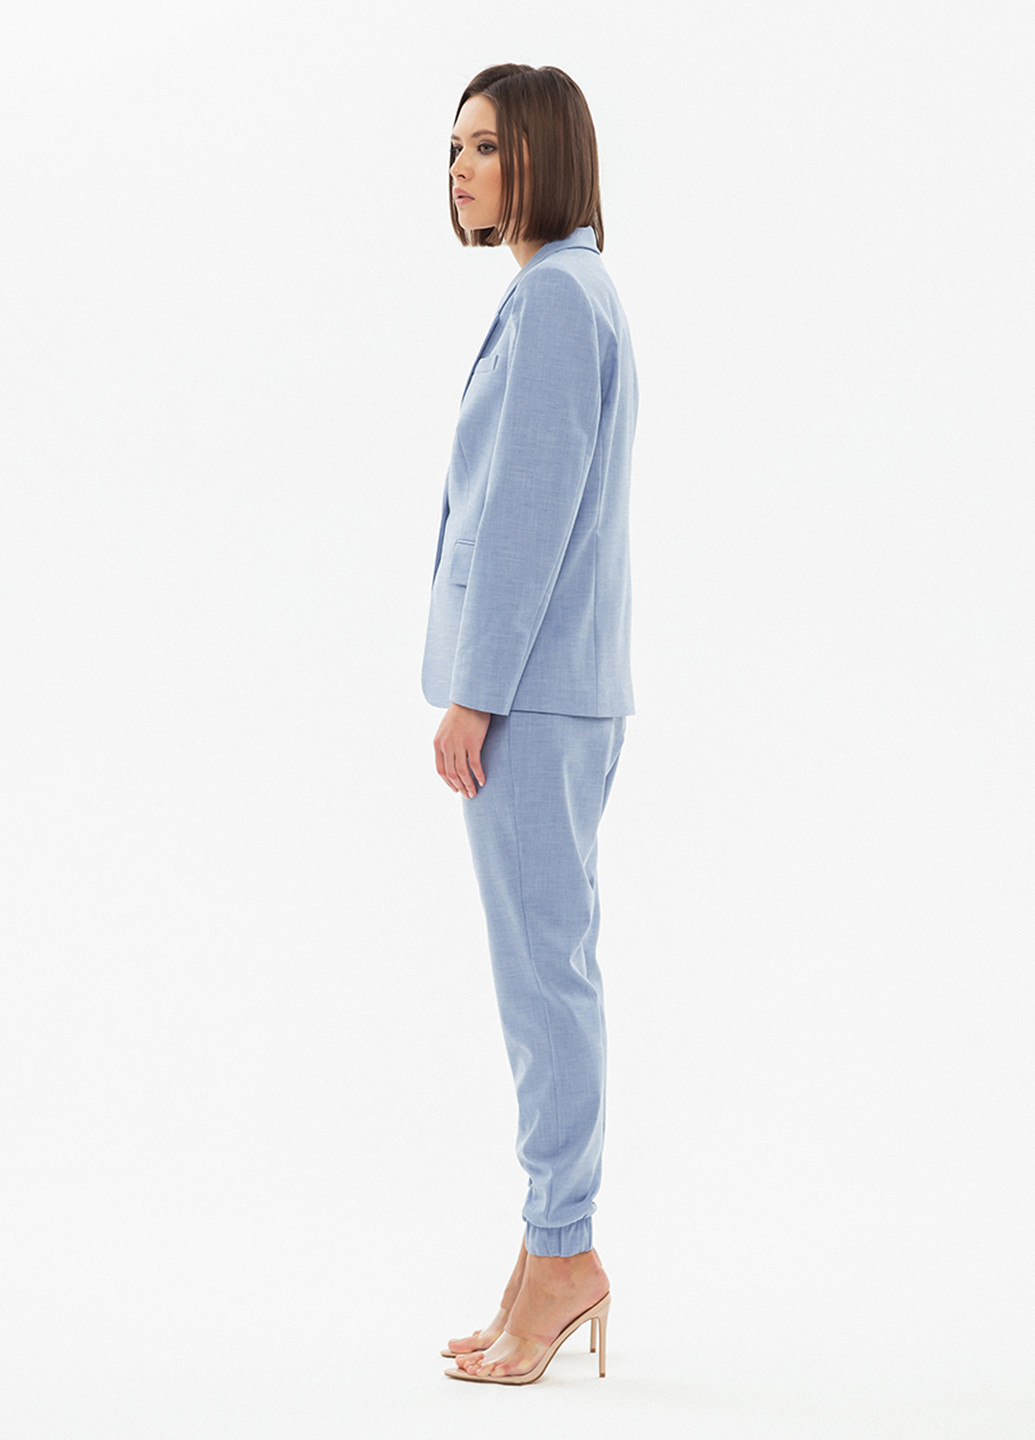 Костюм (жакет, брюки) BGL Комплект (блейзер и брюки) брючный однотонный голубой деловой костюмная, хлопок